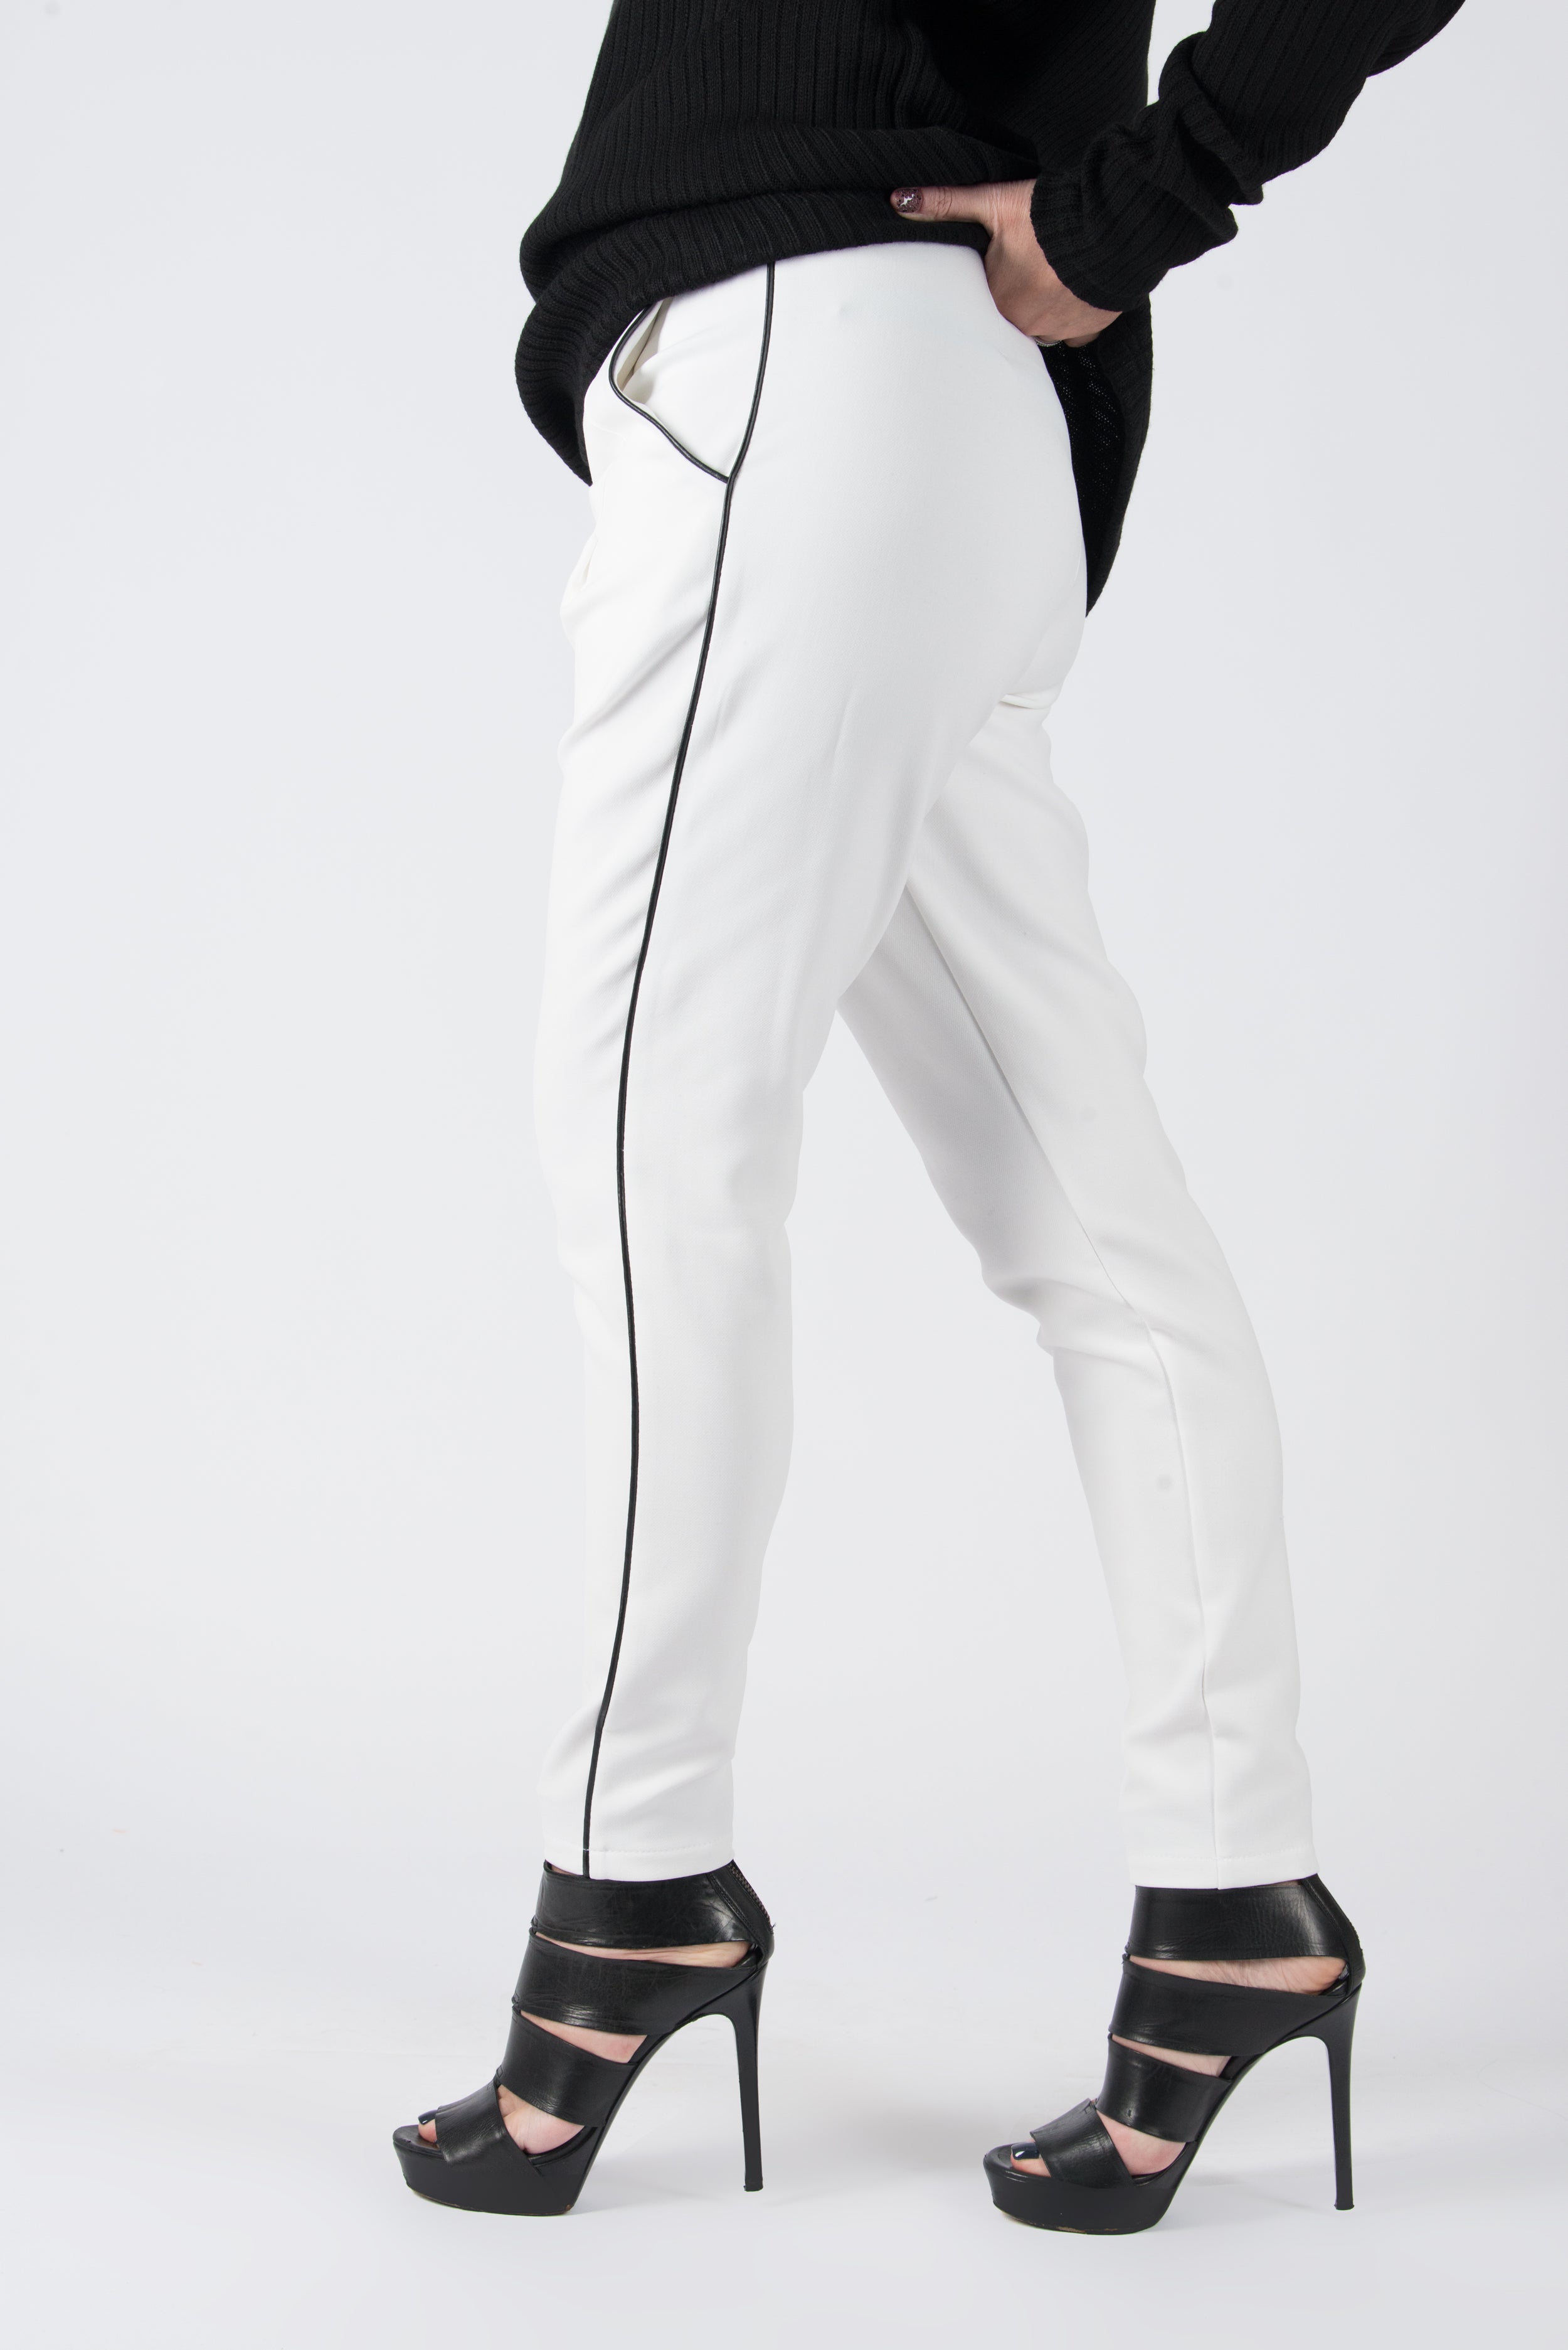 White Tight Pants, White Elegant leggings, New Arrival